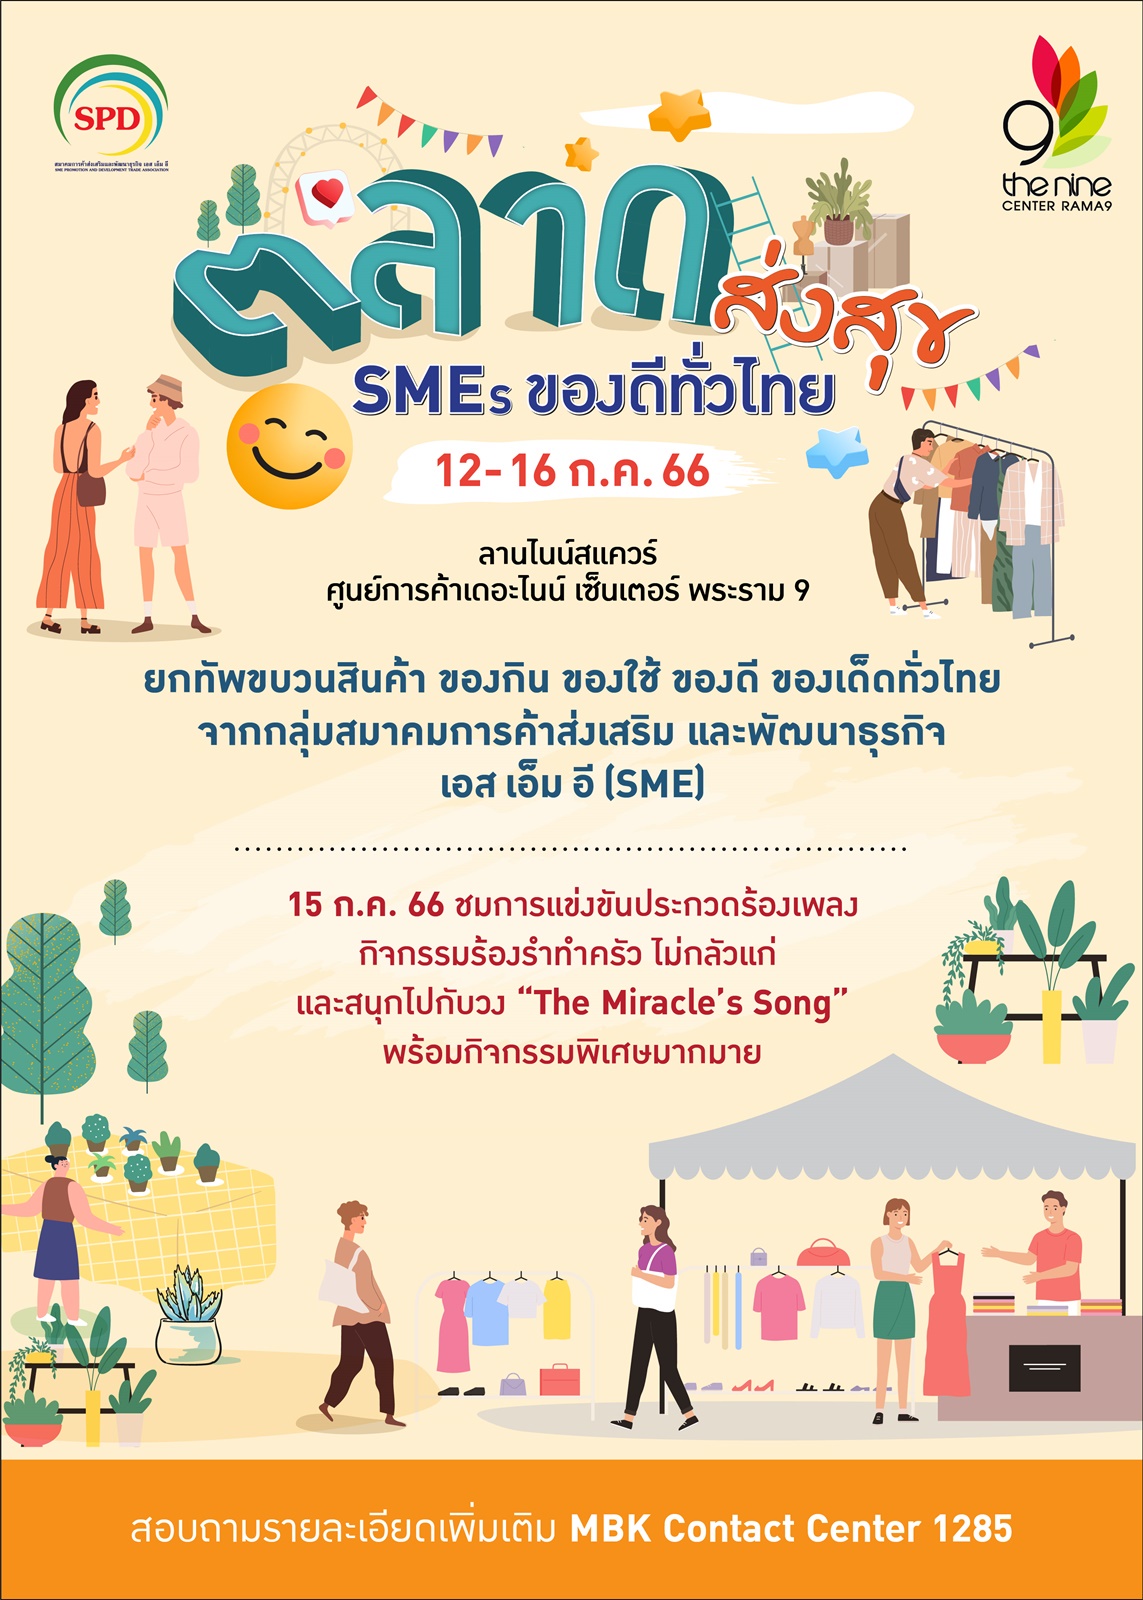 เดอะไนน์ เซ็นเตอร์ พระราม 9 รวมของดีของเด็ดทั่วไทย มาให้ช้อปสนุก @ ตลาดส่งสุข SMEs ของดีทั่วไทย พลาดไม่ได้ 12-16 ก.ค.